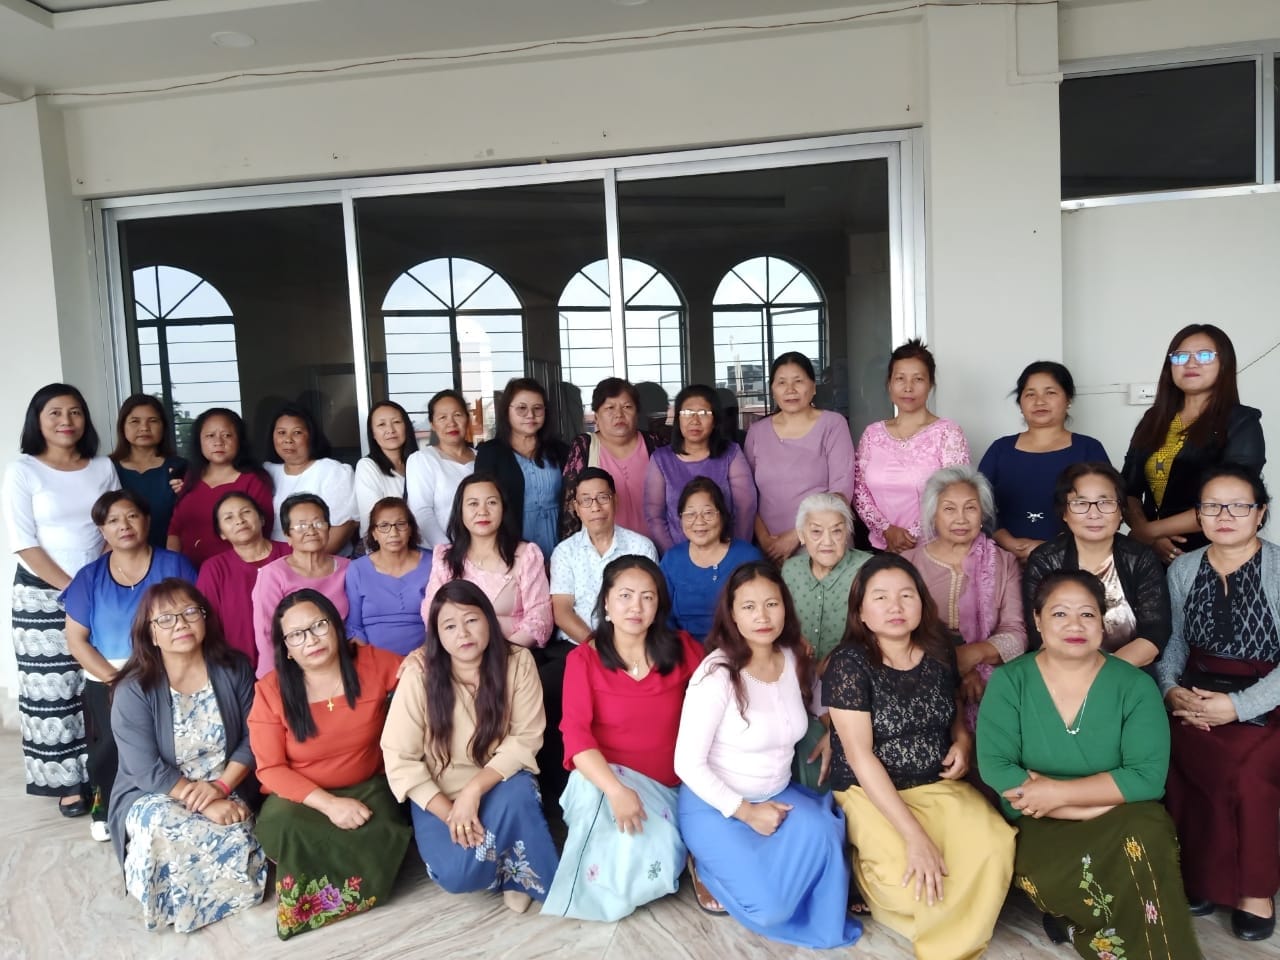 Shillong Pastor Bial BKHP –in Neih inang inkhawp leh LGBTQ Chungchang zirhona (Seminar) an nei a.